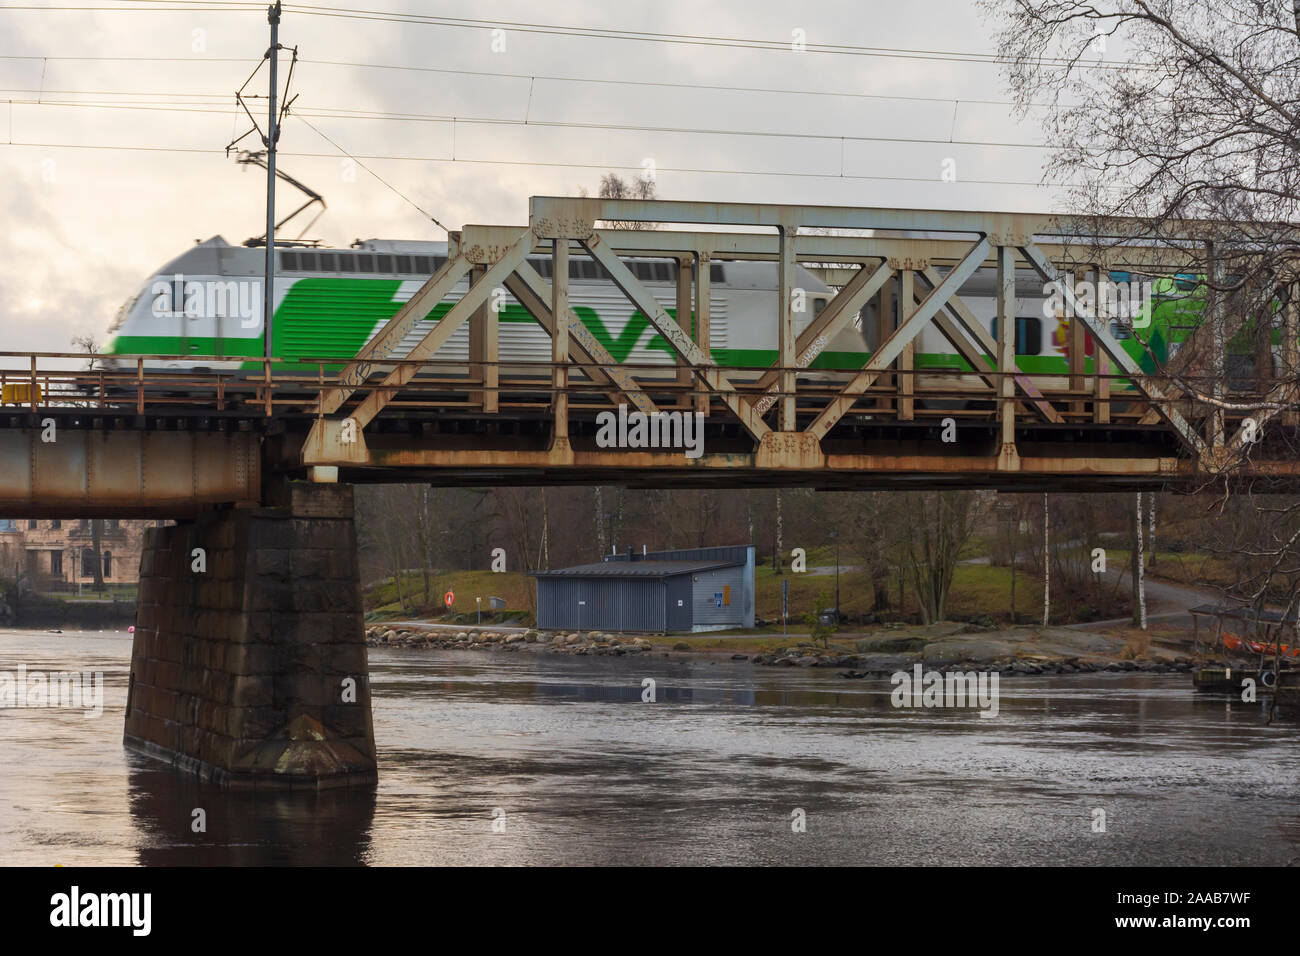 Train on Iron railroad bridge in Tampere Finland Stock Photo